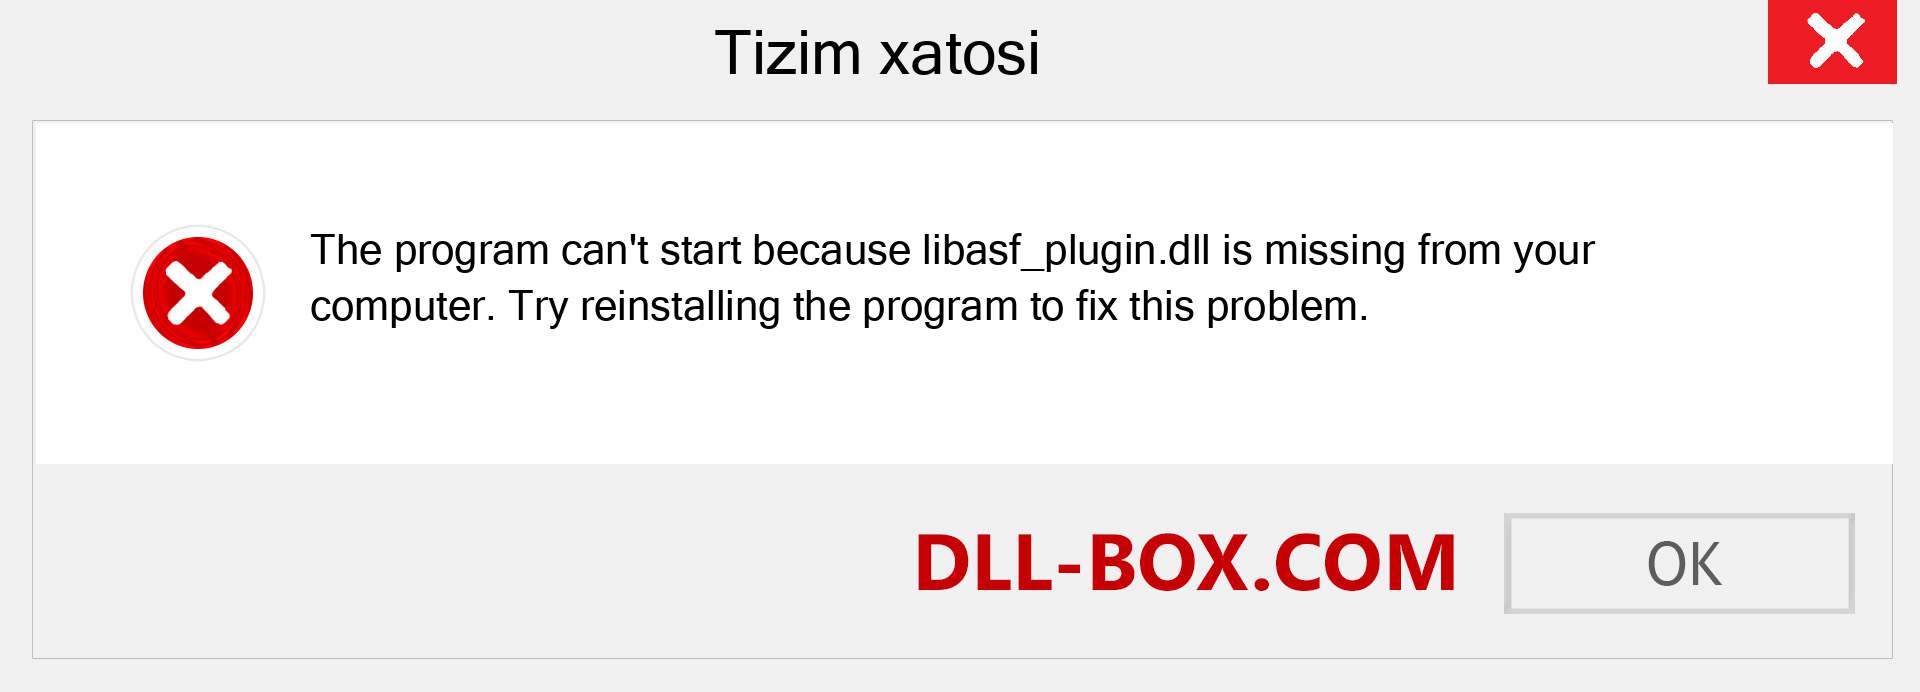 libasf_plugin.dll fayli yo'qolganmi?. Windows 7, 8, 10 uchun yuklab olish - Windowsda libasf_plugin dll etishmayotgan xatoni tuzating, rasmlar, rasmlar